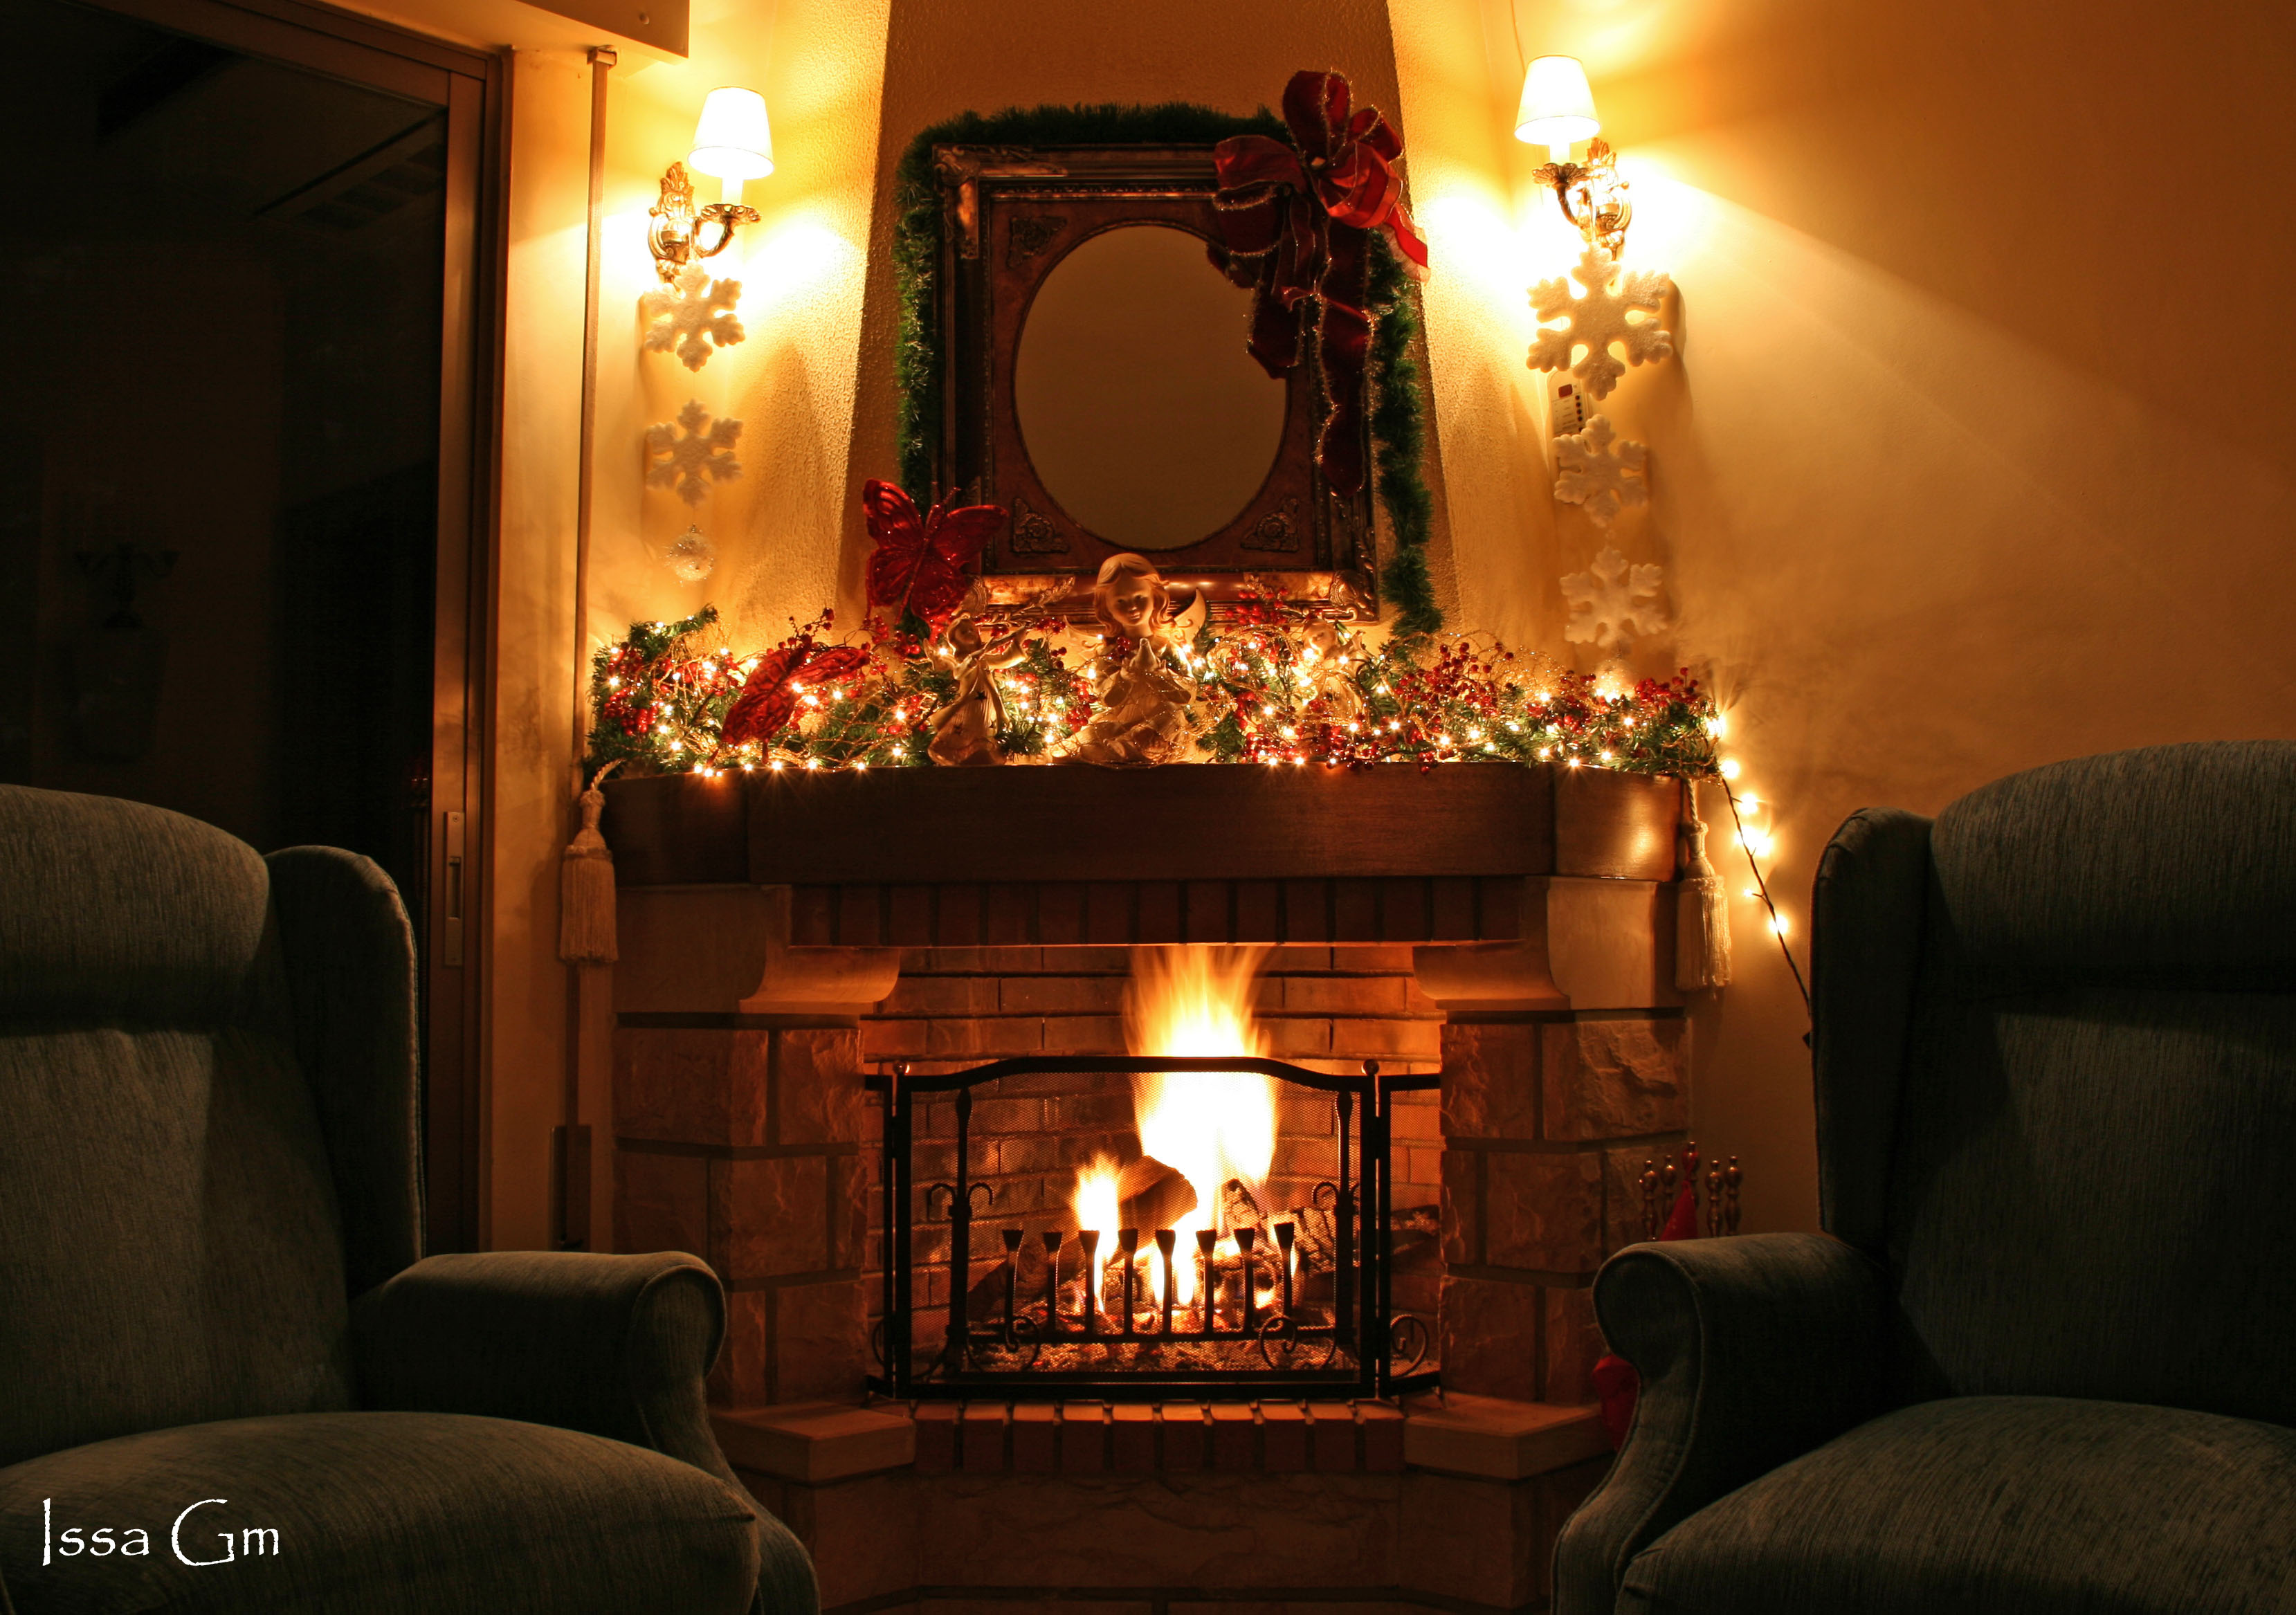 File:Christmas Fireplace.jpg - Wikipedia